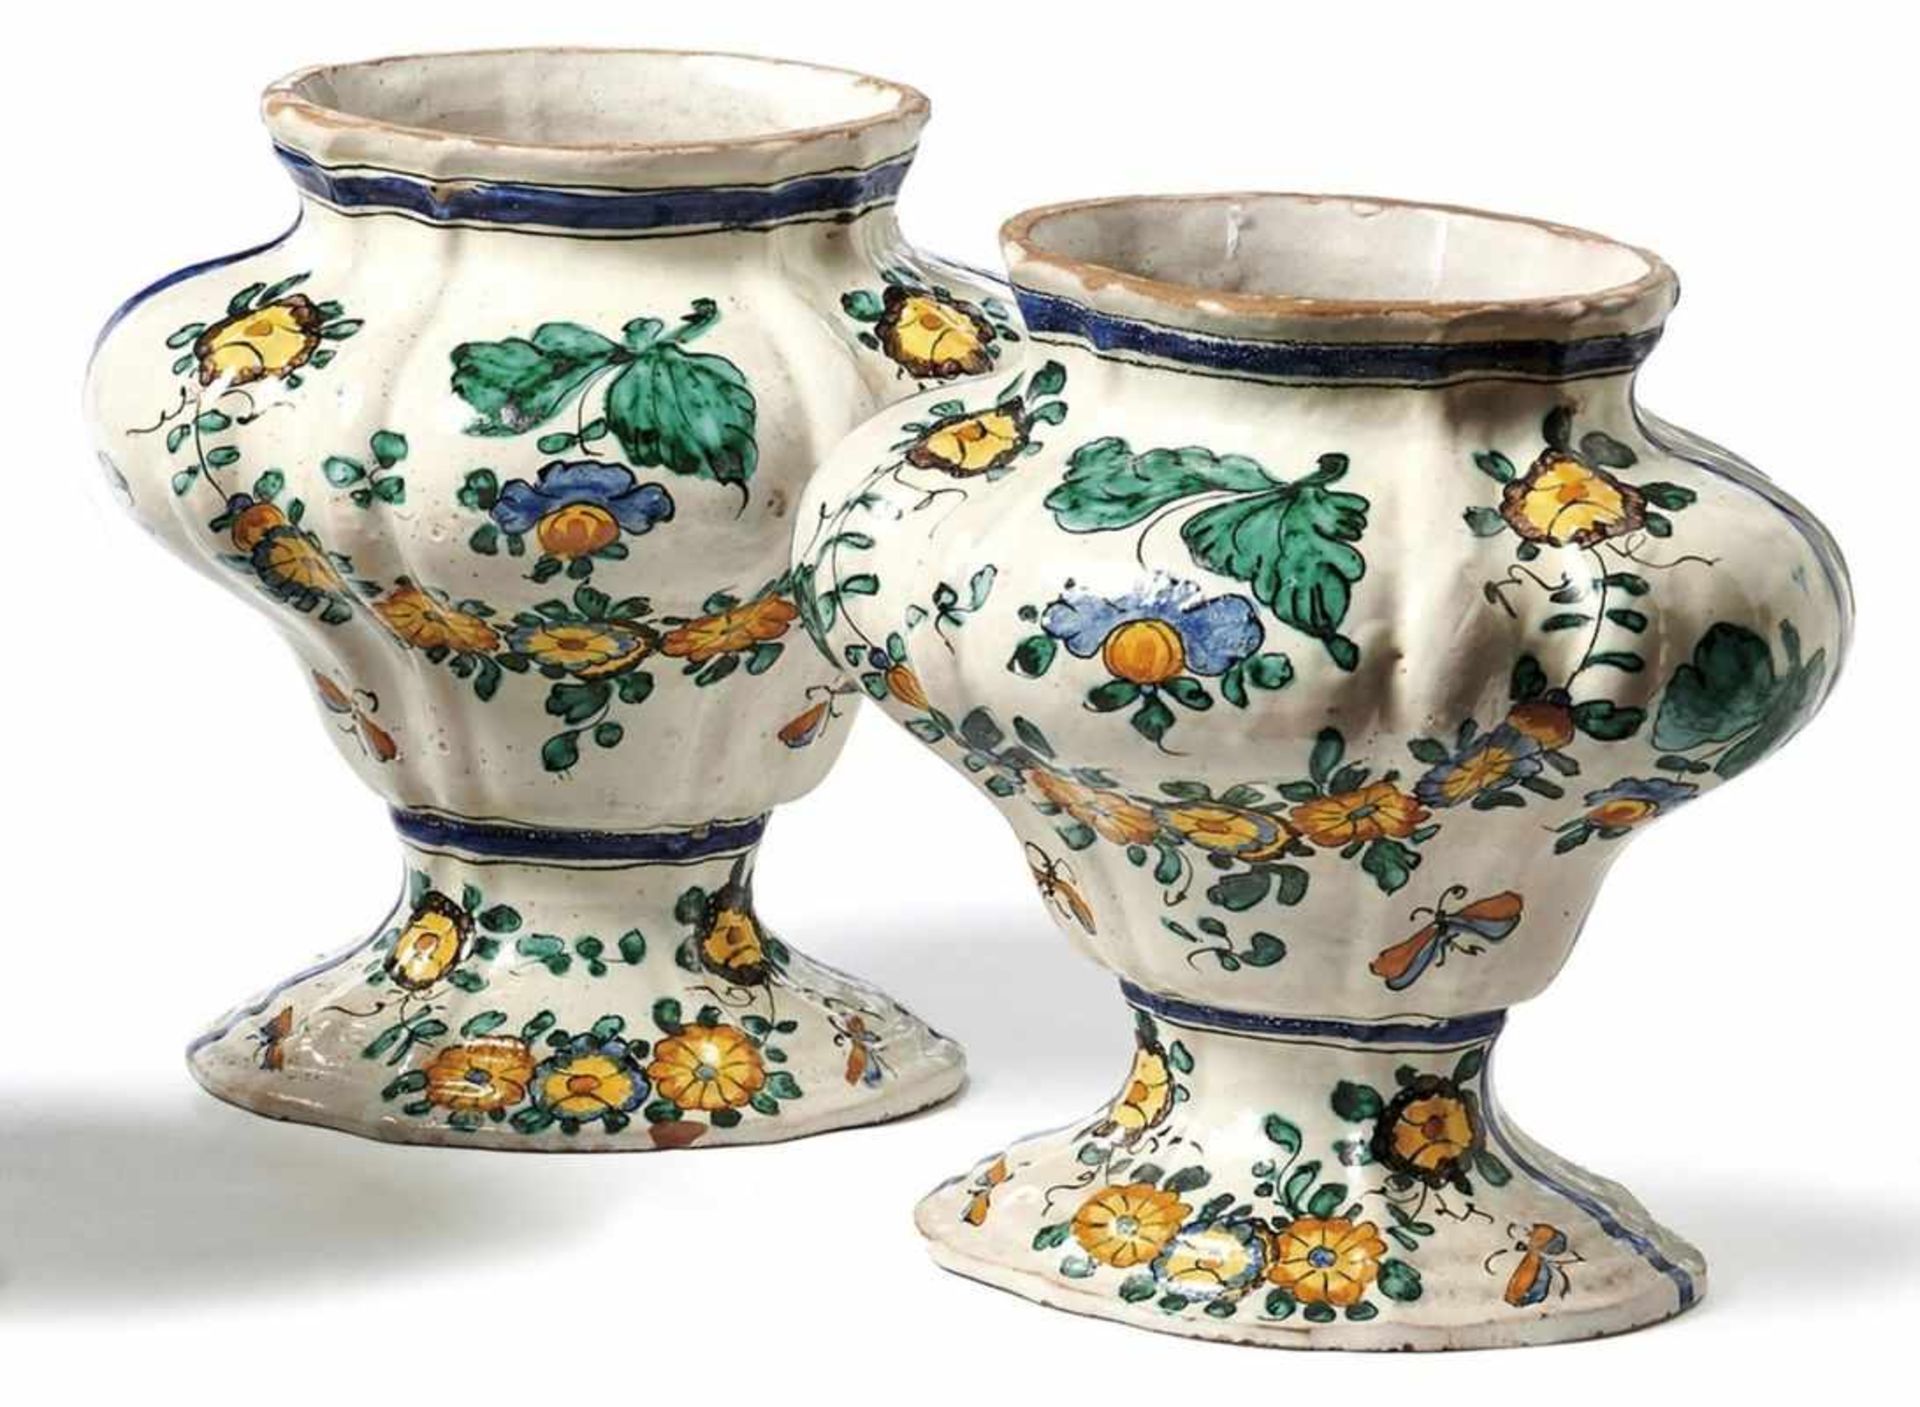 Zwei Vasen aus einer KlosterapothekeLatium, dat. 1742Ovale, gefußte und mit vertikalen Faltenzügen